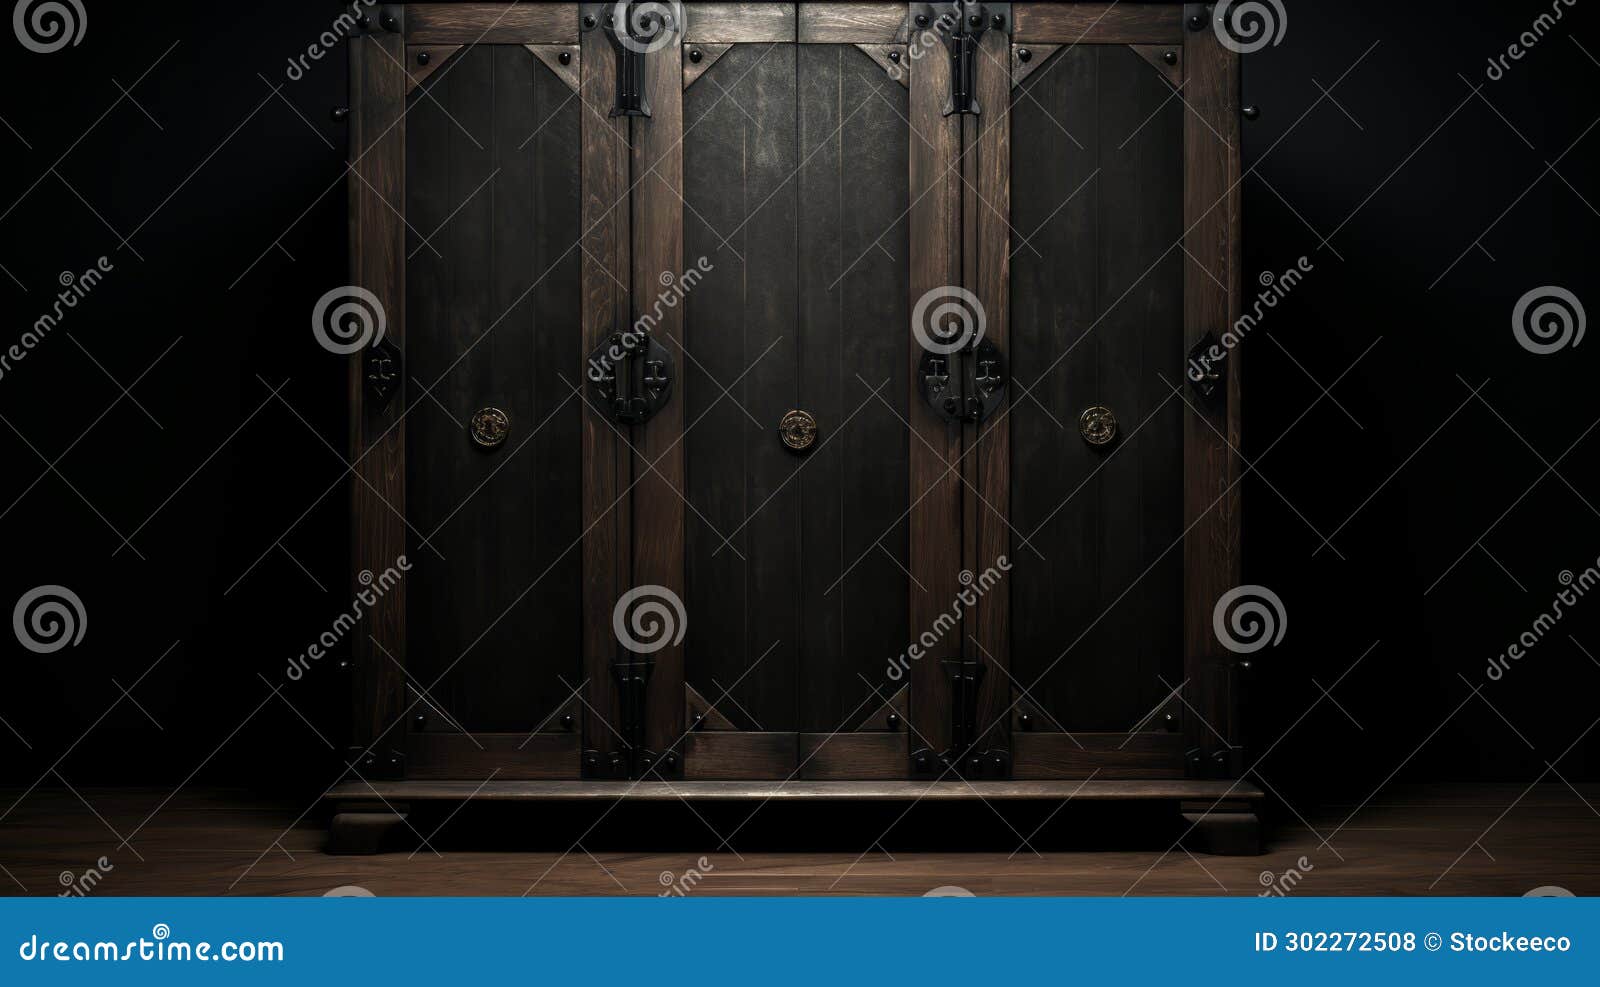 modern dark wood wardrobe with asian-inspired gothic details